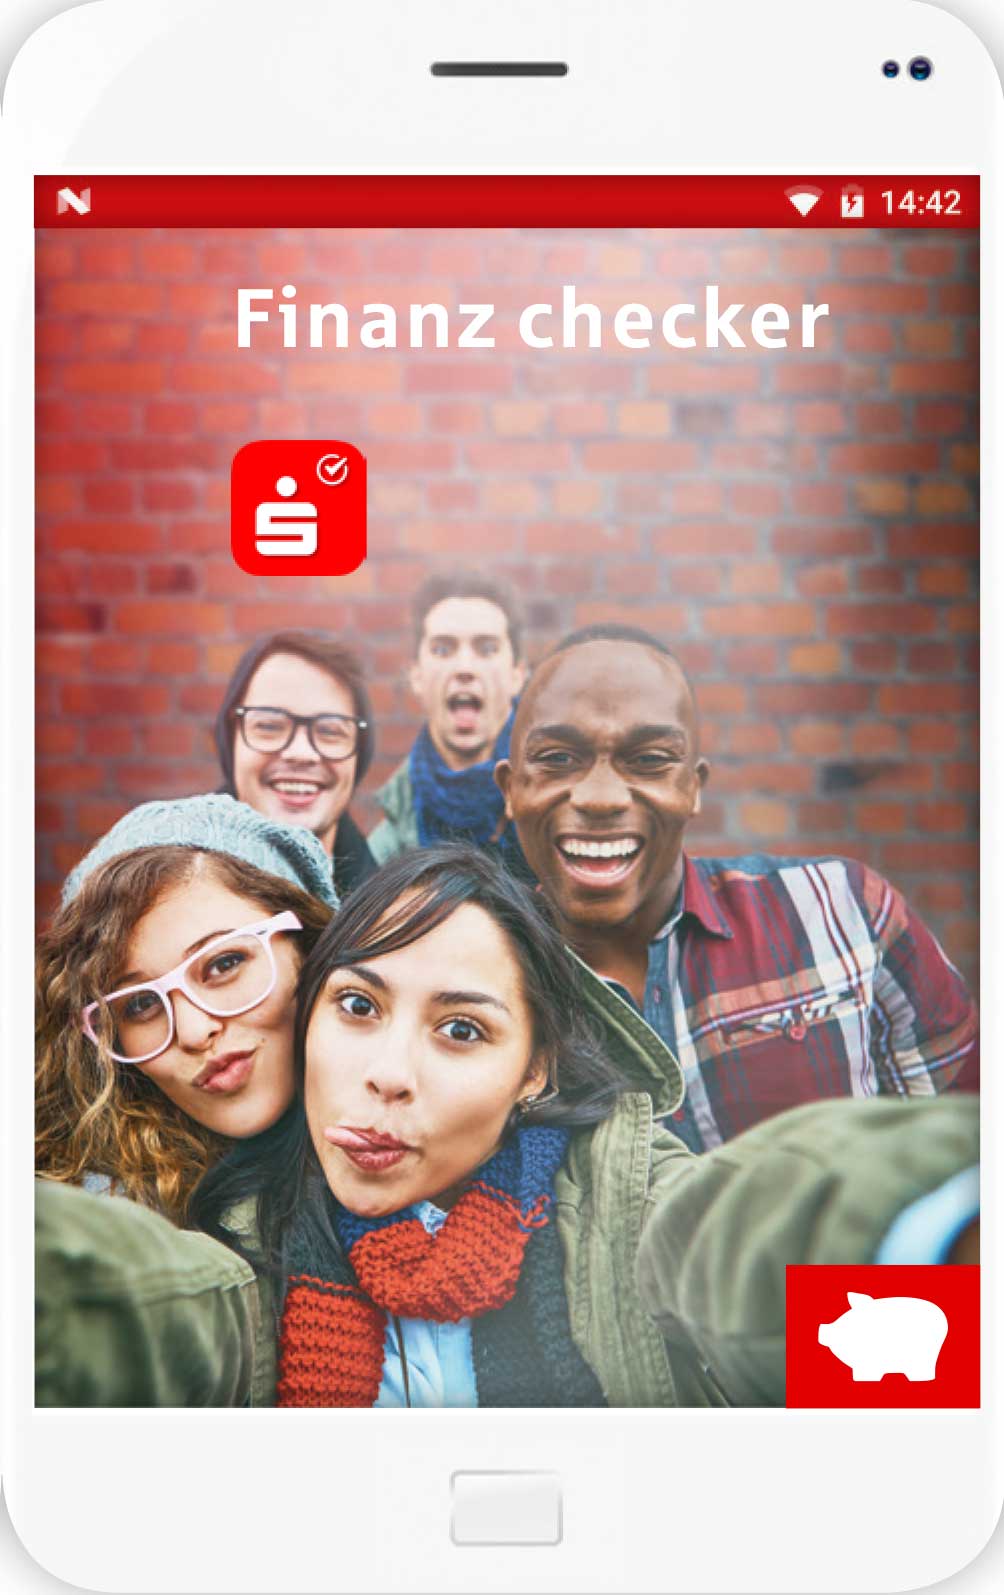 Der Flyer der kostenlosen App Finanzchecker zeigt, wie junge Menschen ihr Geld besser einteilen können.